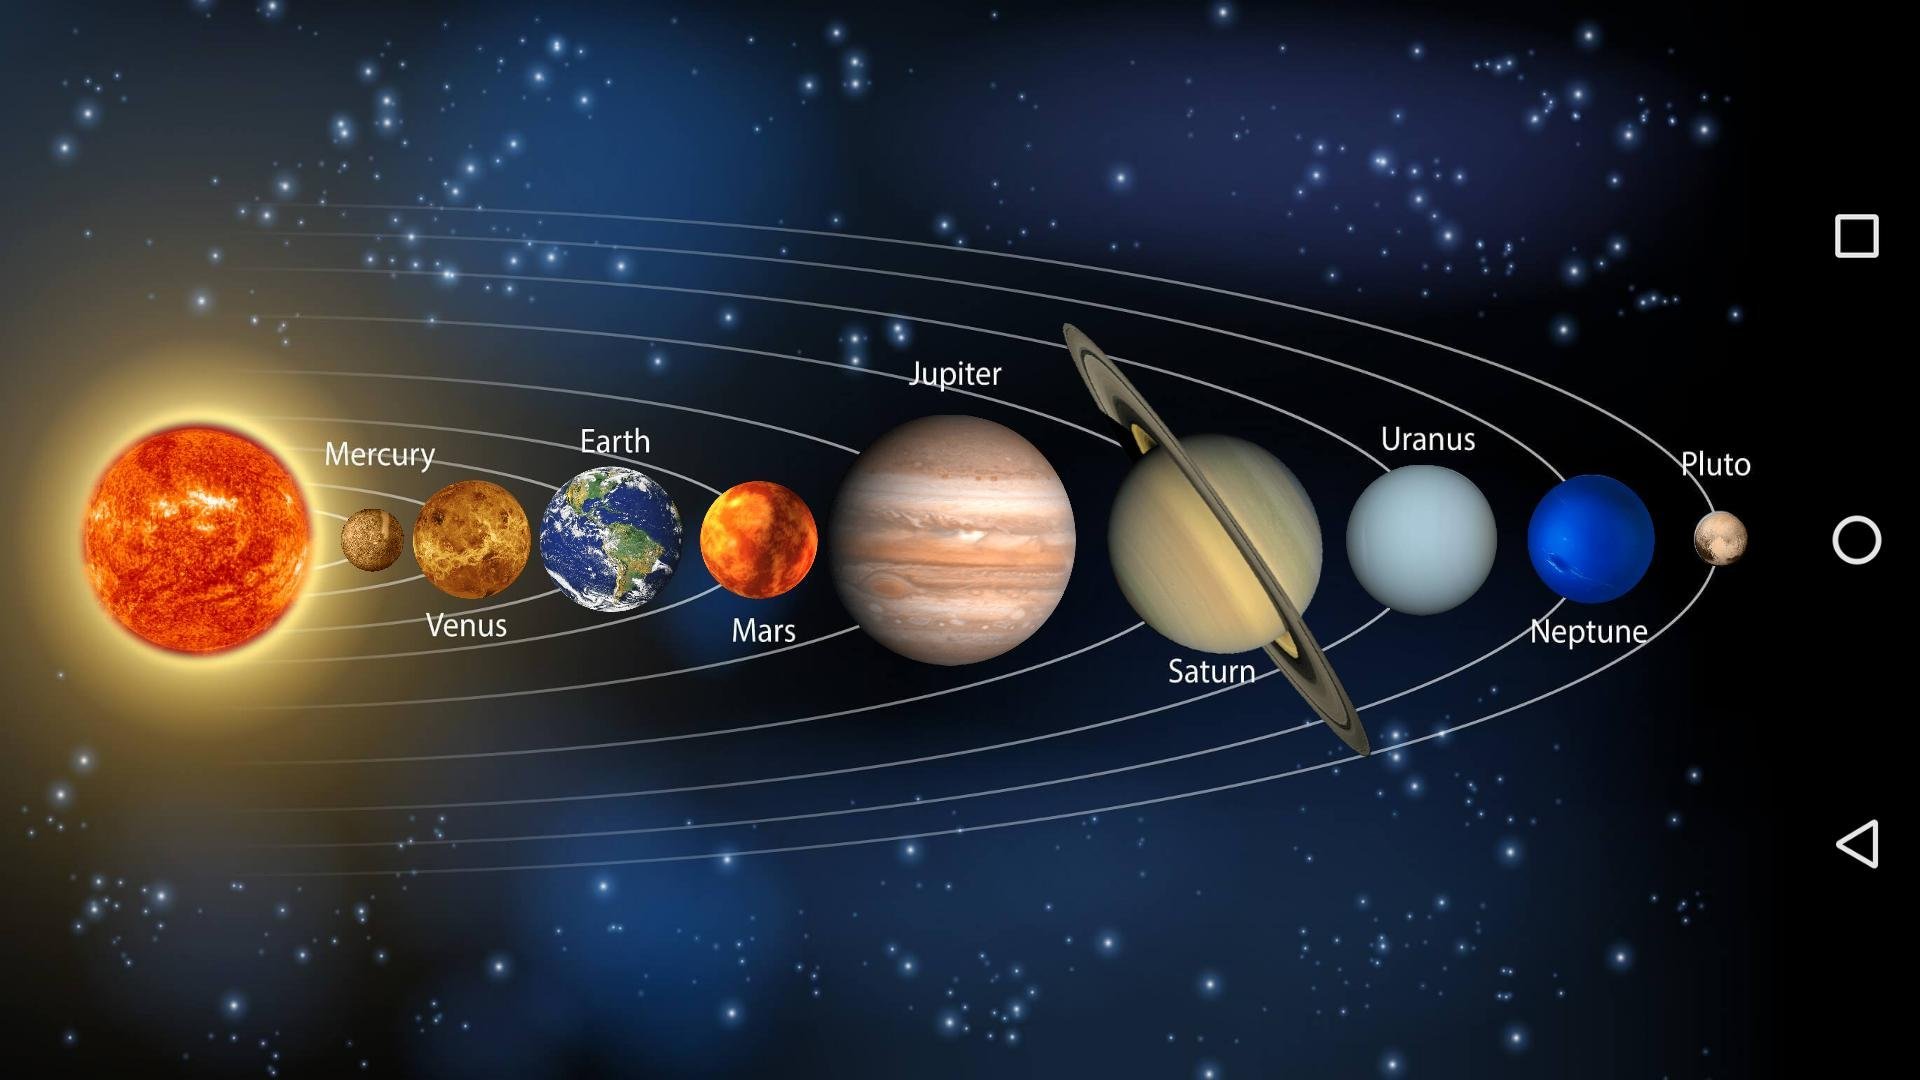 Земля планета солнечной системы вопросы. Расположение планет солнечной системы по порядку. Солнечная система Планетная система. Солнечная система с названиями планет по порядку от солнца. 9 Планет солнечной системы по порядку.